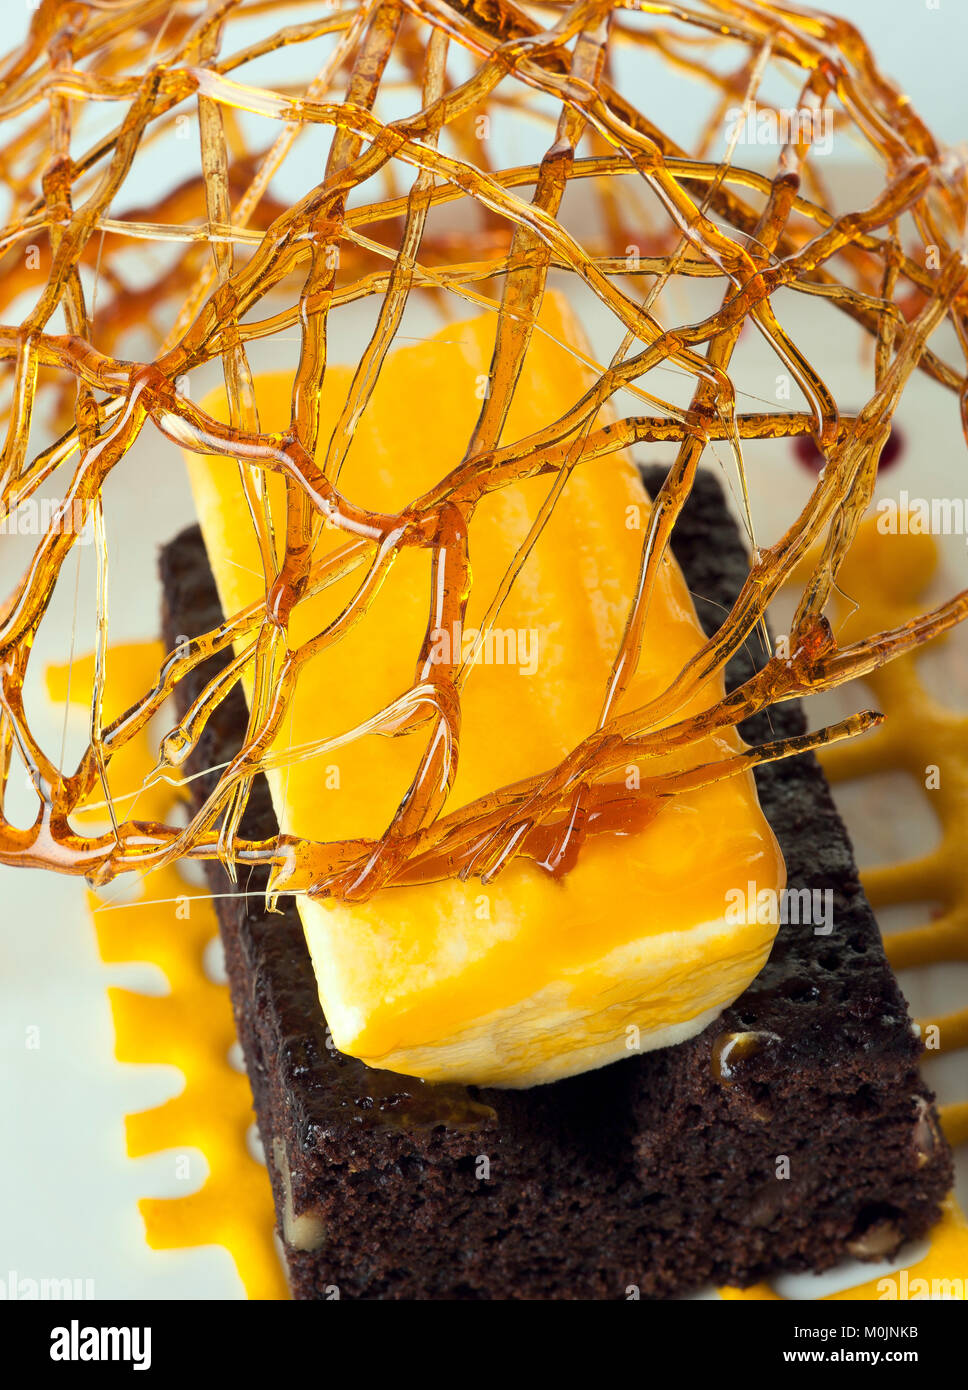 Caramel and chocolate cake decorated gourmet closeup Stock Photo